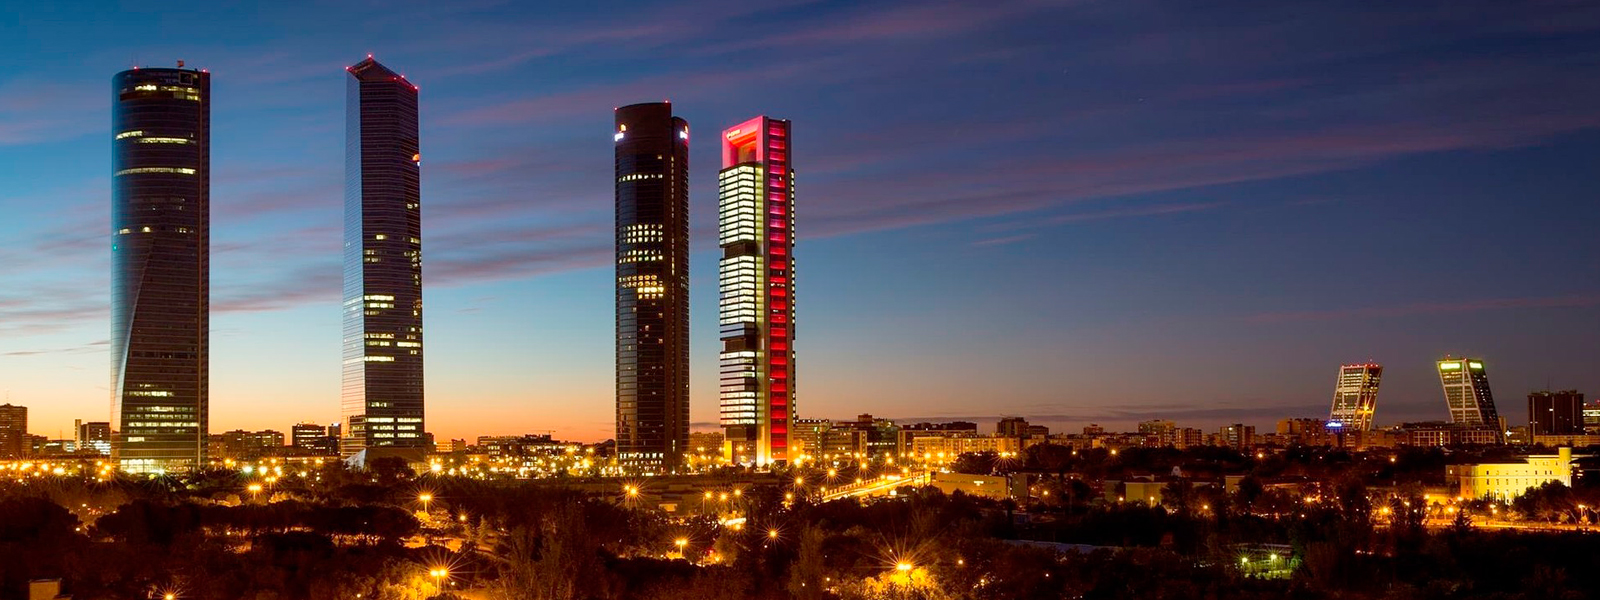 Inmobiliaria CME PENINSULAR en Madrid, venta de pisos en Madrid, alquiler de pisos en Madrid. Venta y alquiler de casas y pisos en Madrid. Inmobiliarias en Madrid